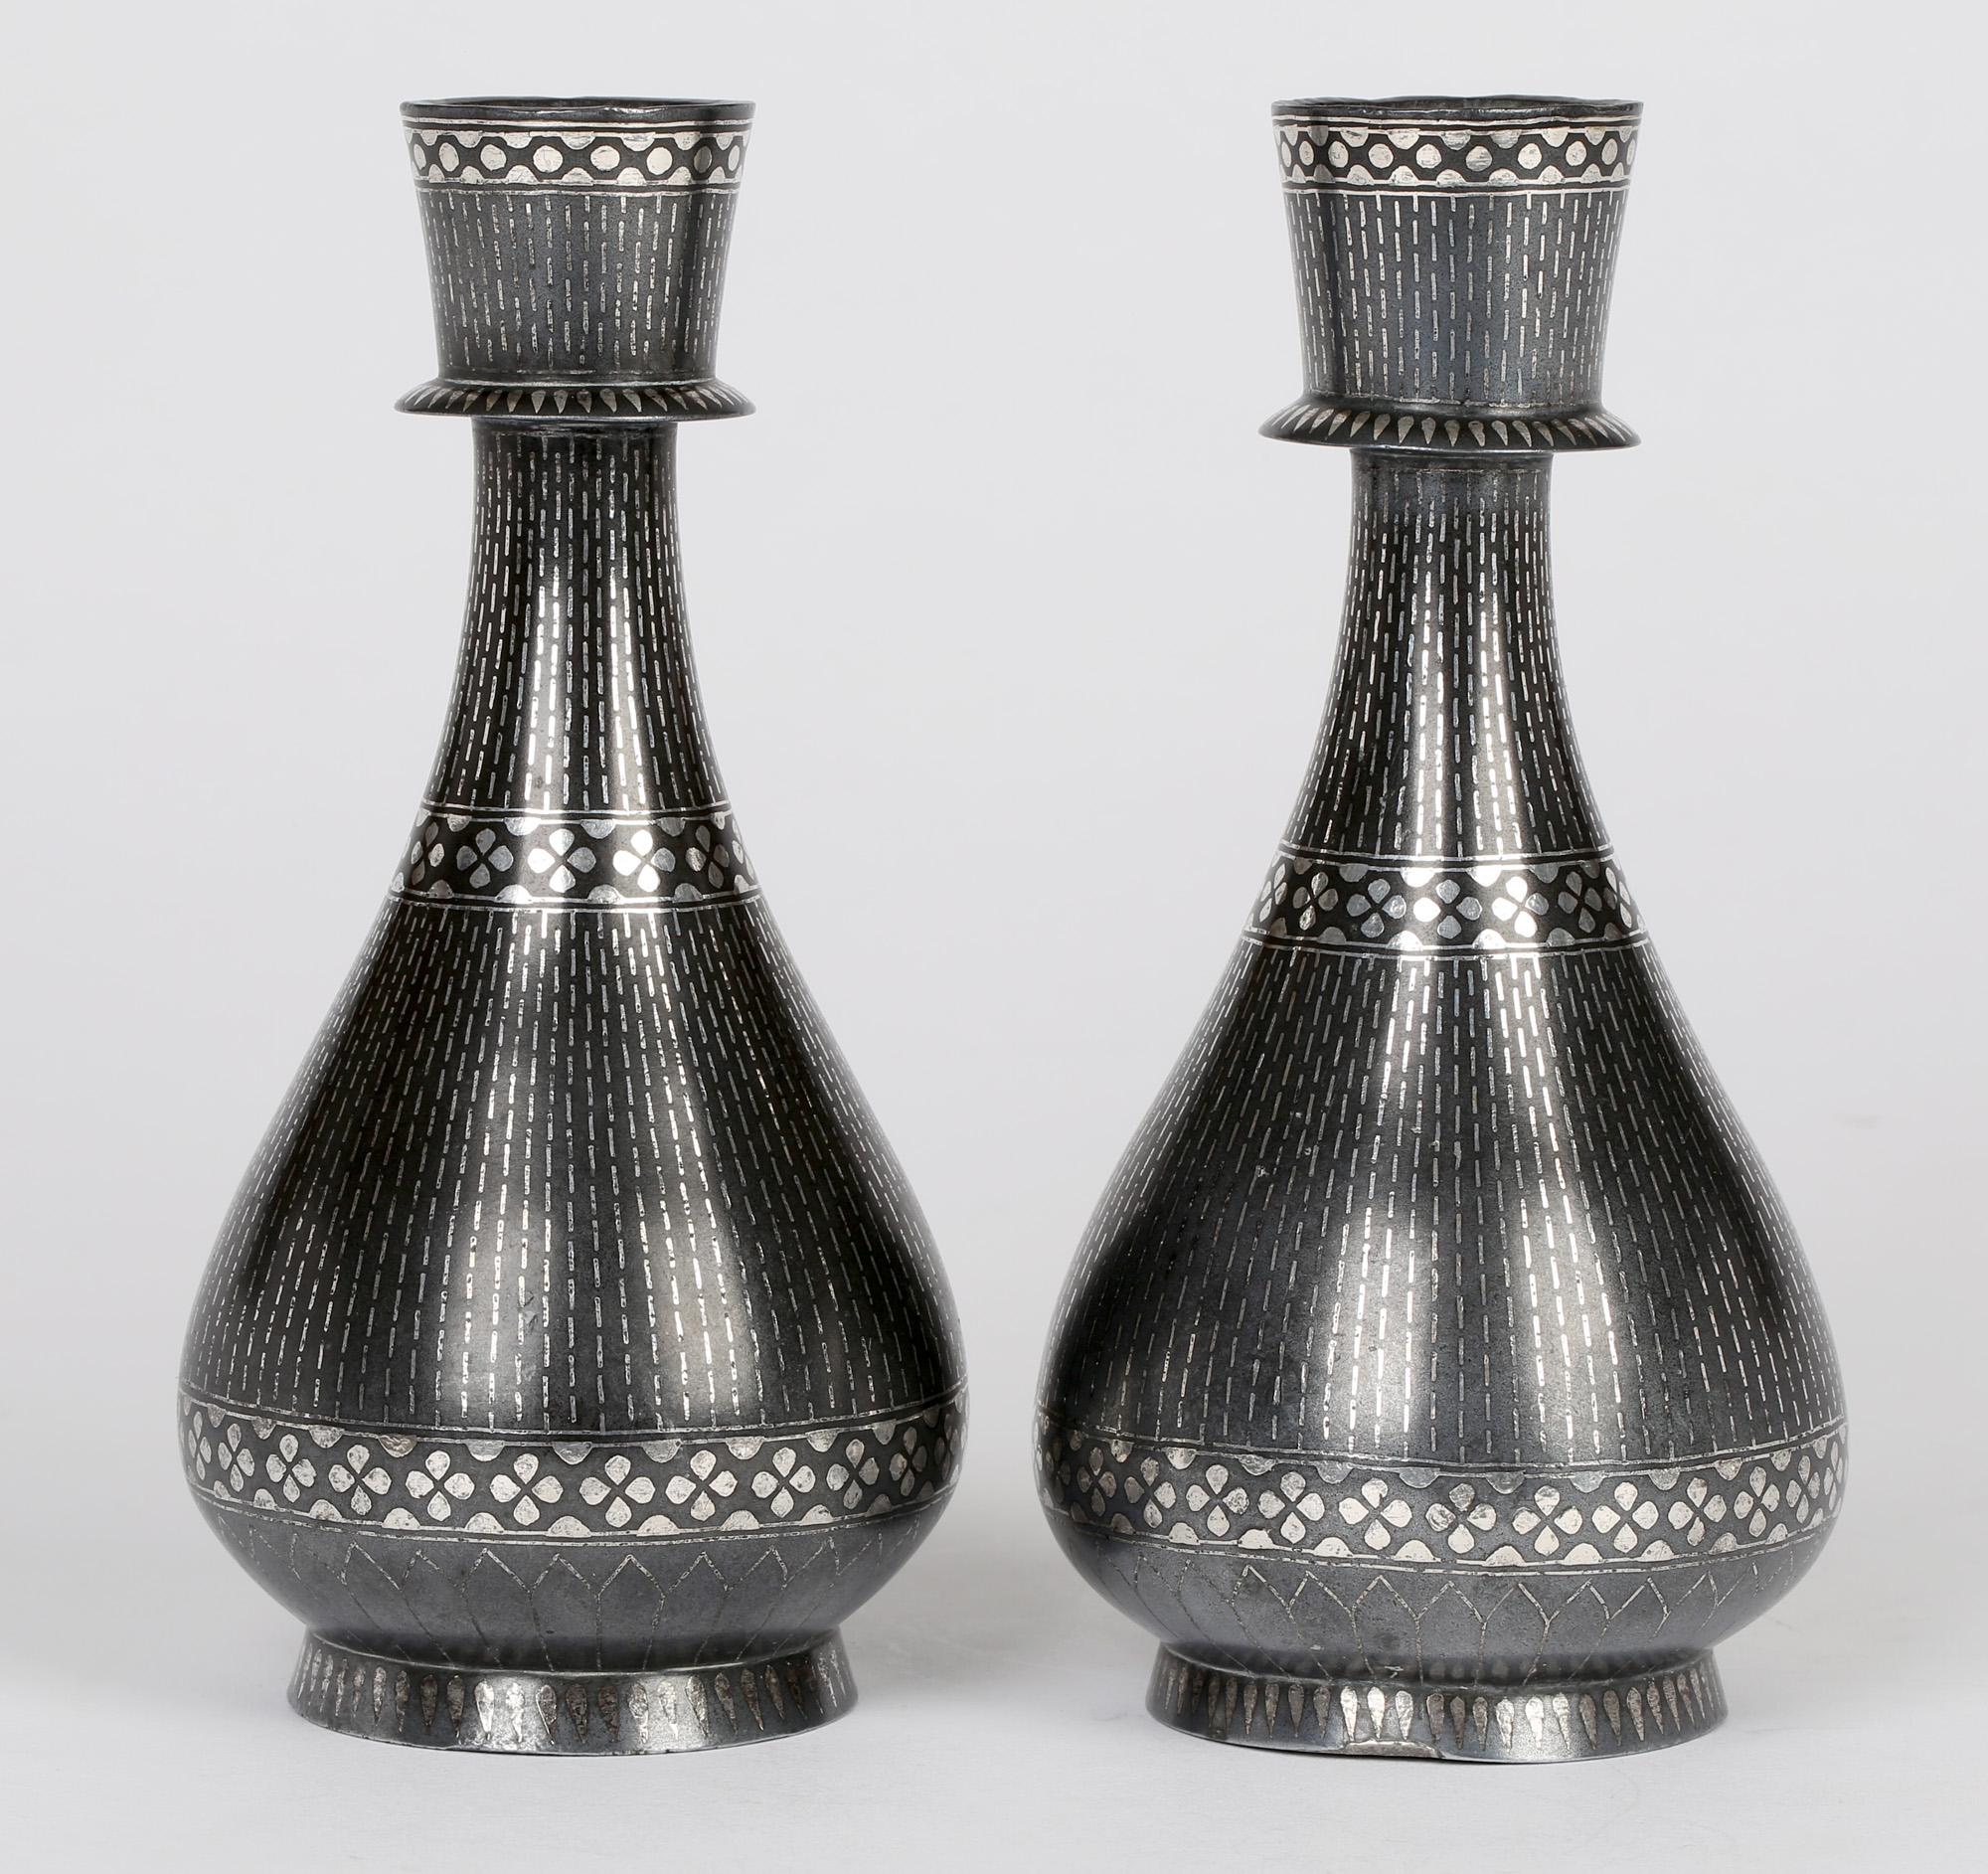 Ein sehr schönes Paar antiker indischer Bidri-Ware-Vasen in Tropfenform mit linearen und floralen Blütenblattmotiven in Silberauflage, wahrscheinlich aus dem späten 19. Die Vasen stehen auf einem abgerundeten Sockelfuß mit einem tropfenförmigen